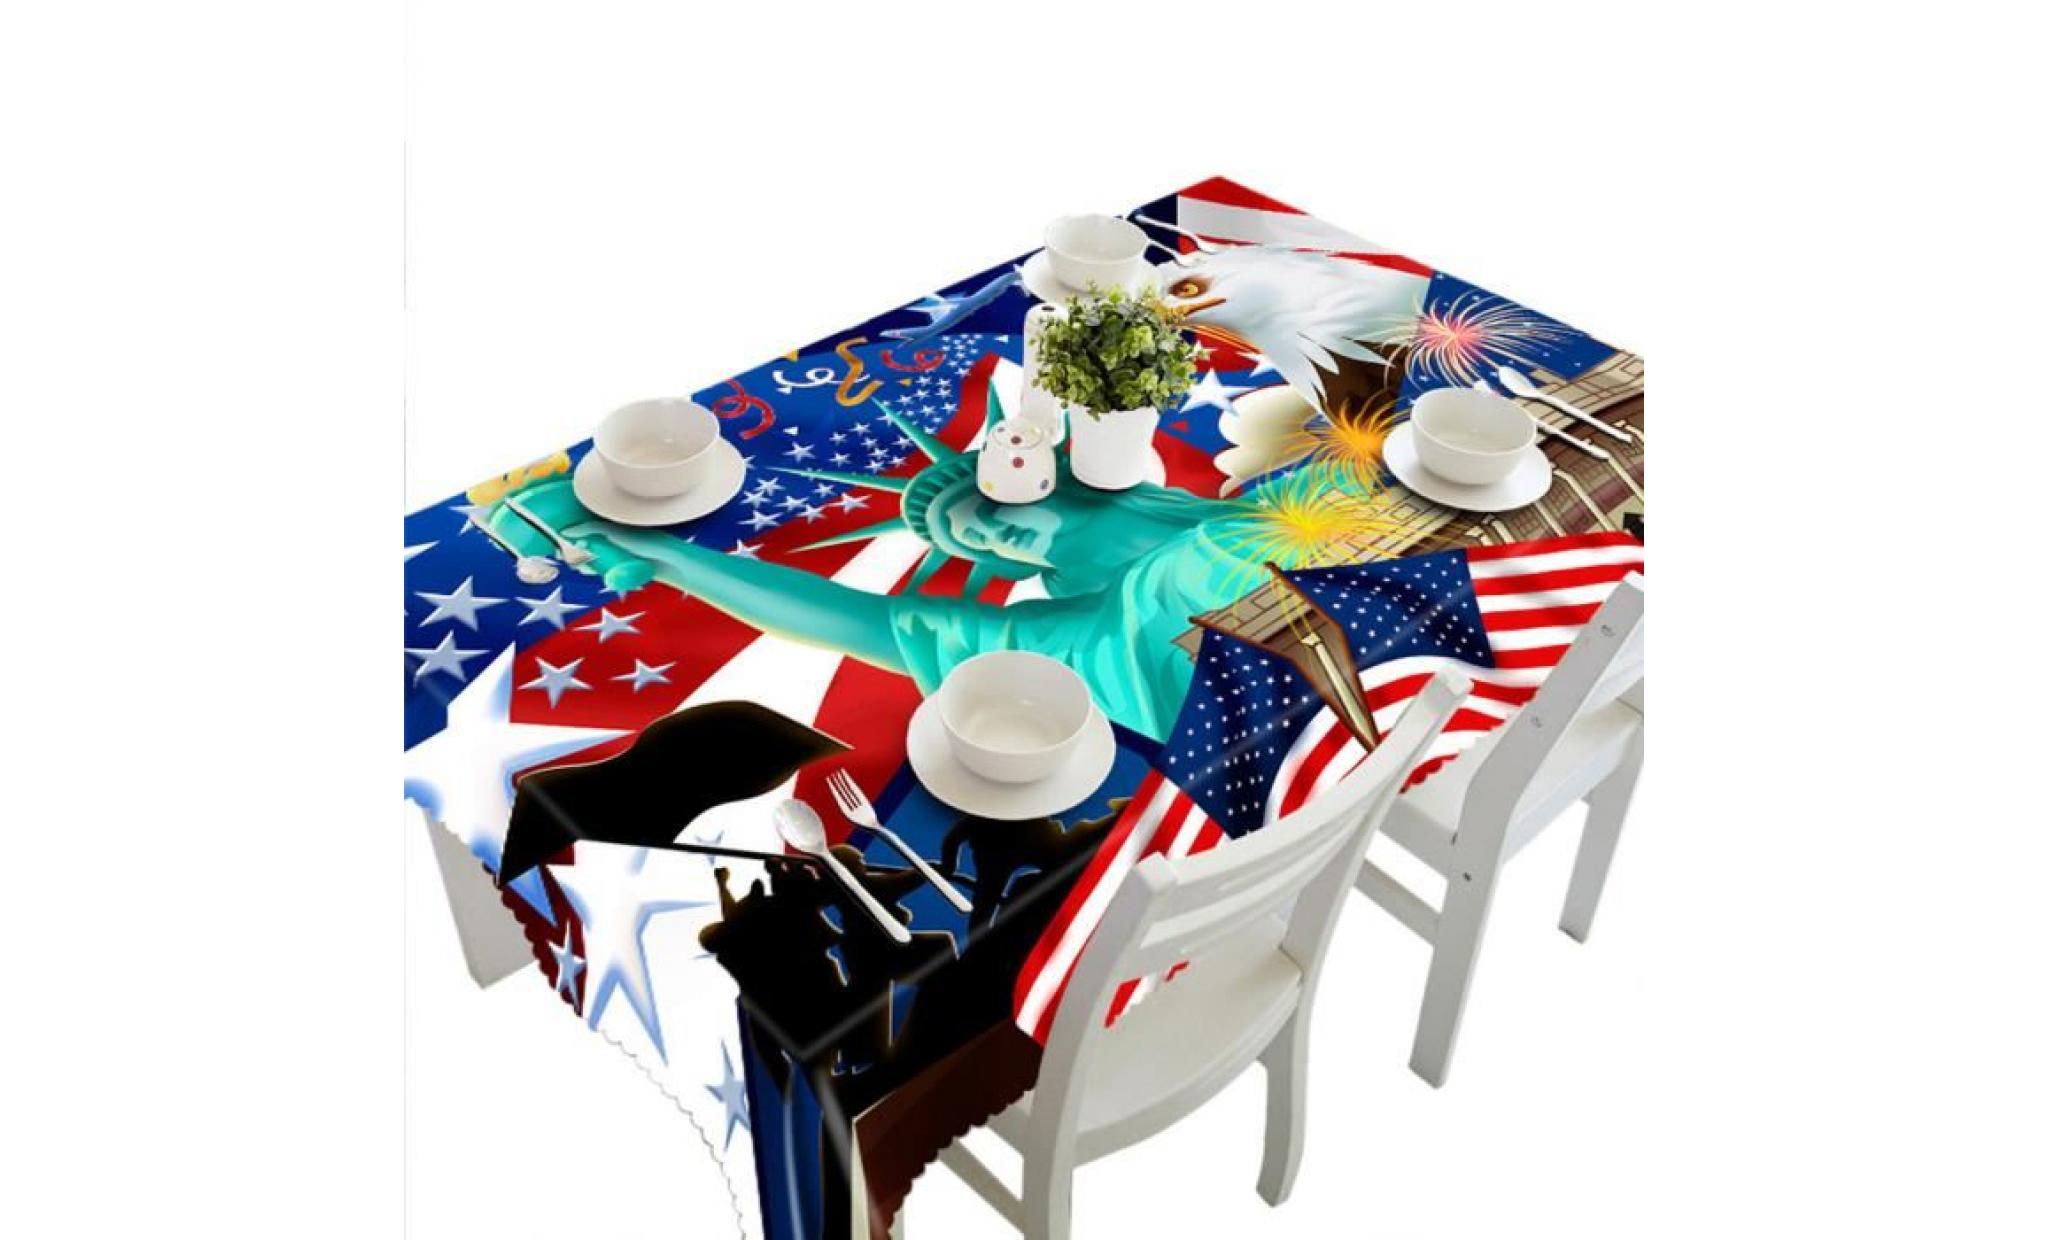 3d multi table à manger fonctionnelle tissu pour picnic party b nappe@vivieronmies122